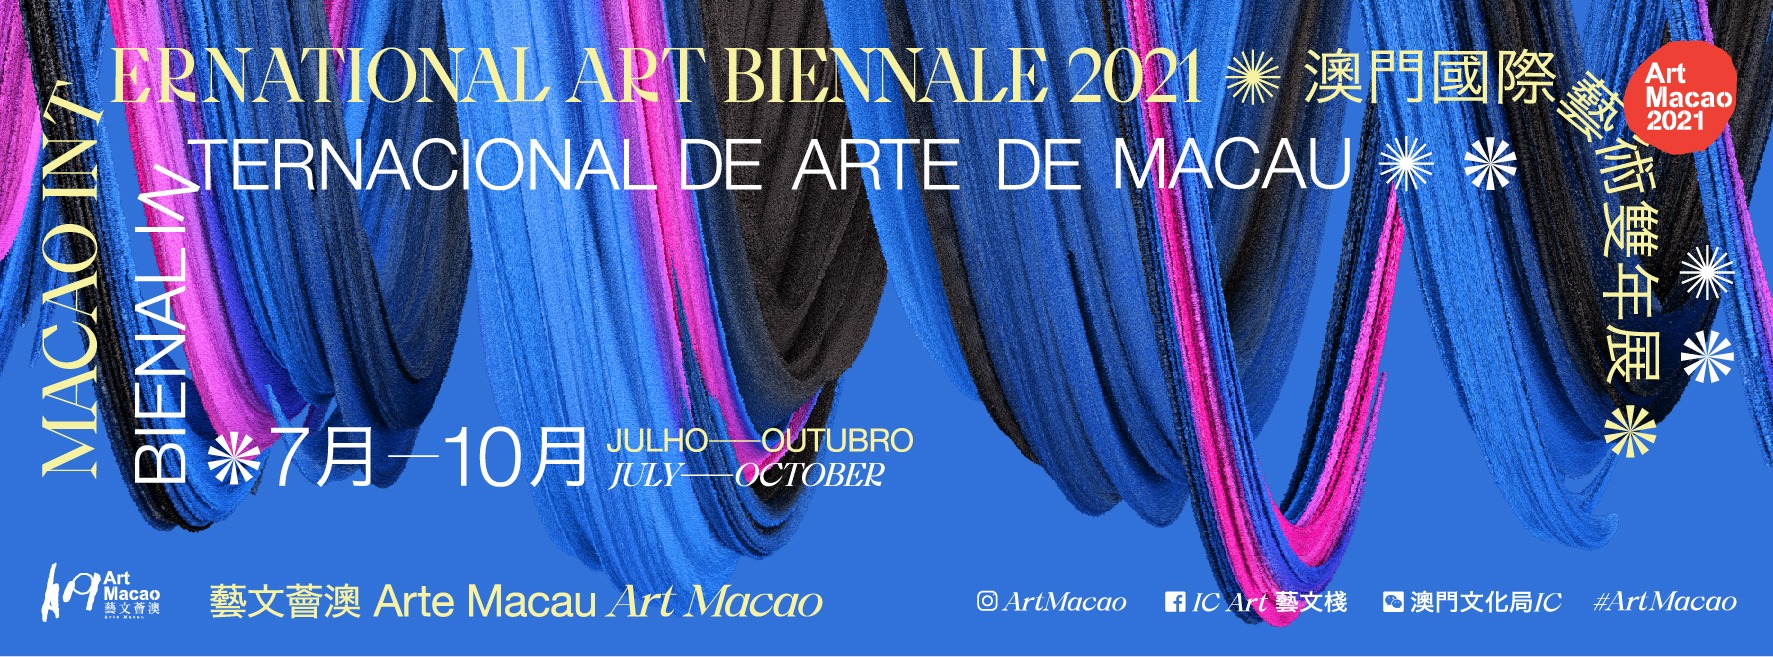 international biennale art macao 2021